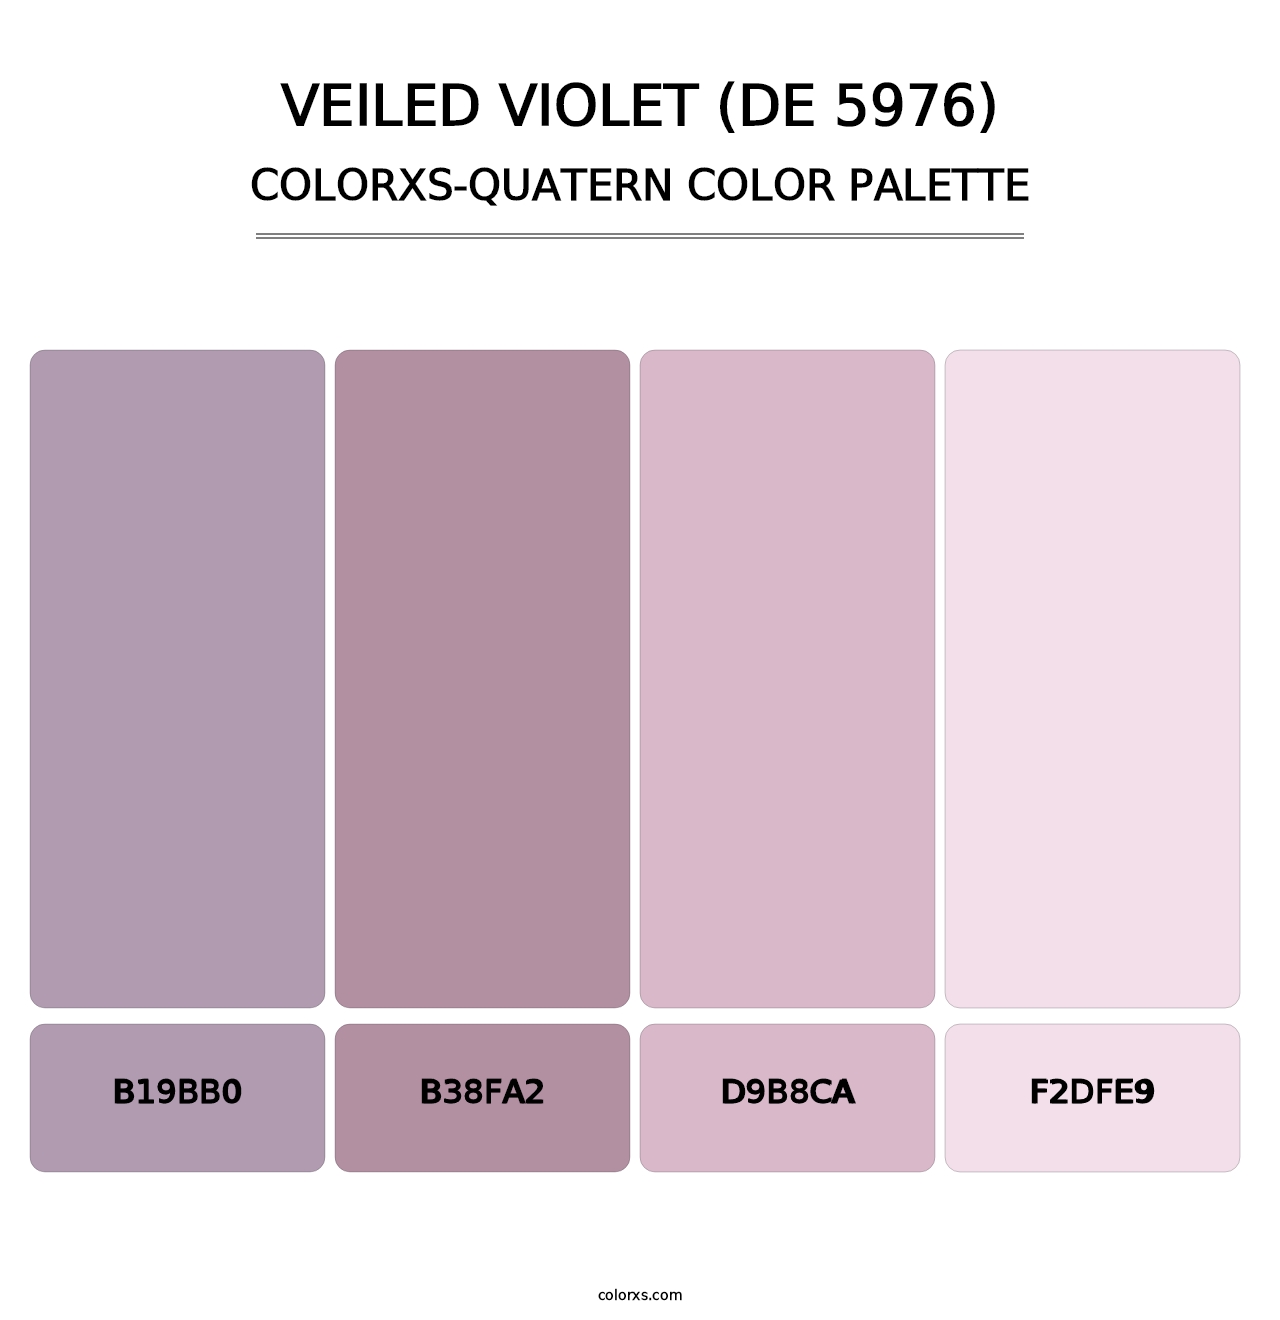 Veiled Violet (DE 5976) - Colorxs Quatern Palette